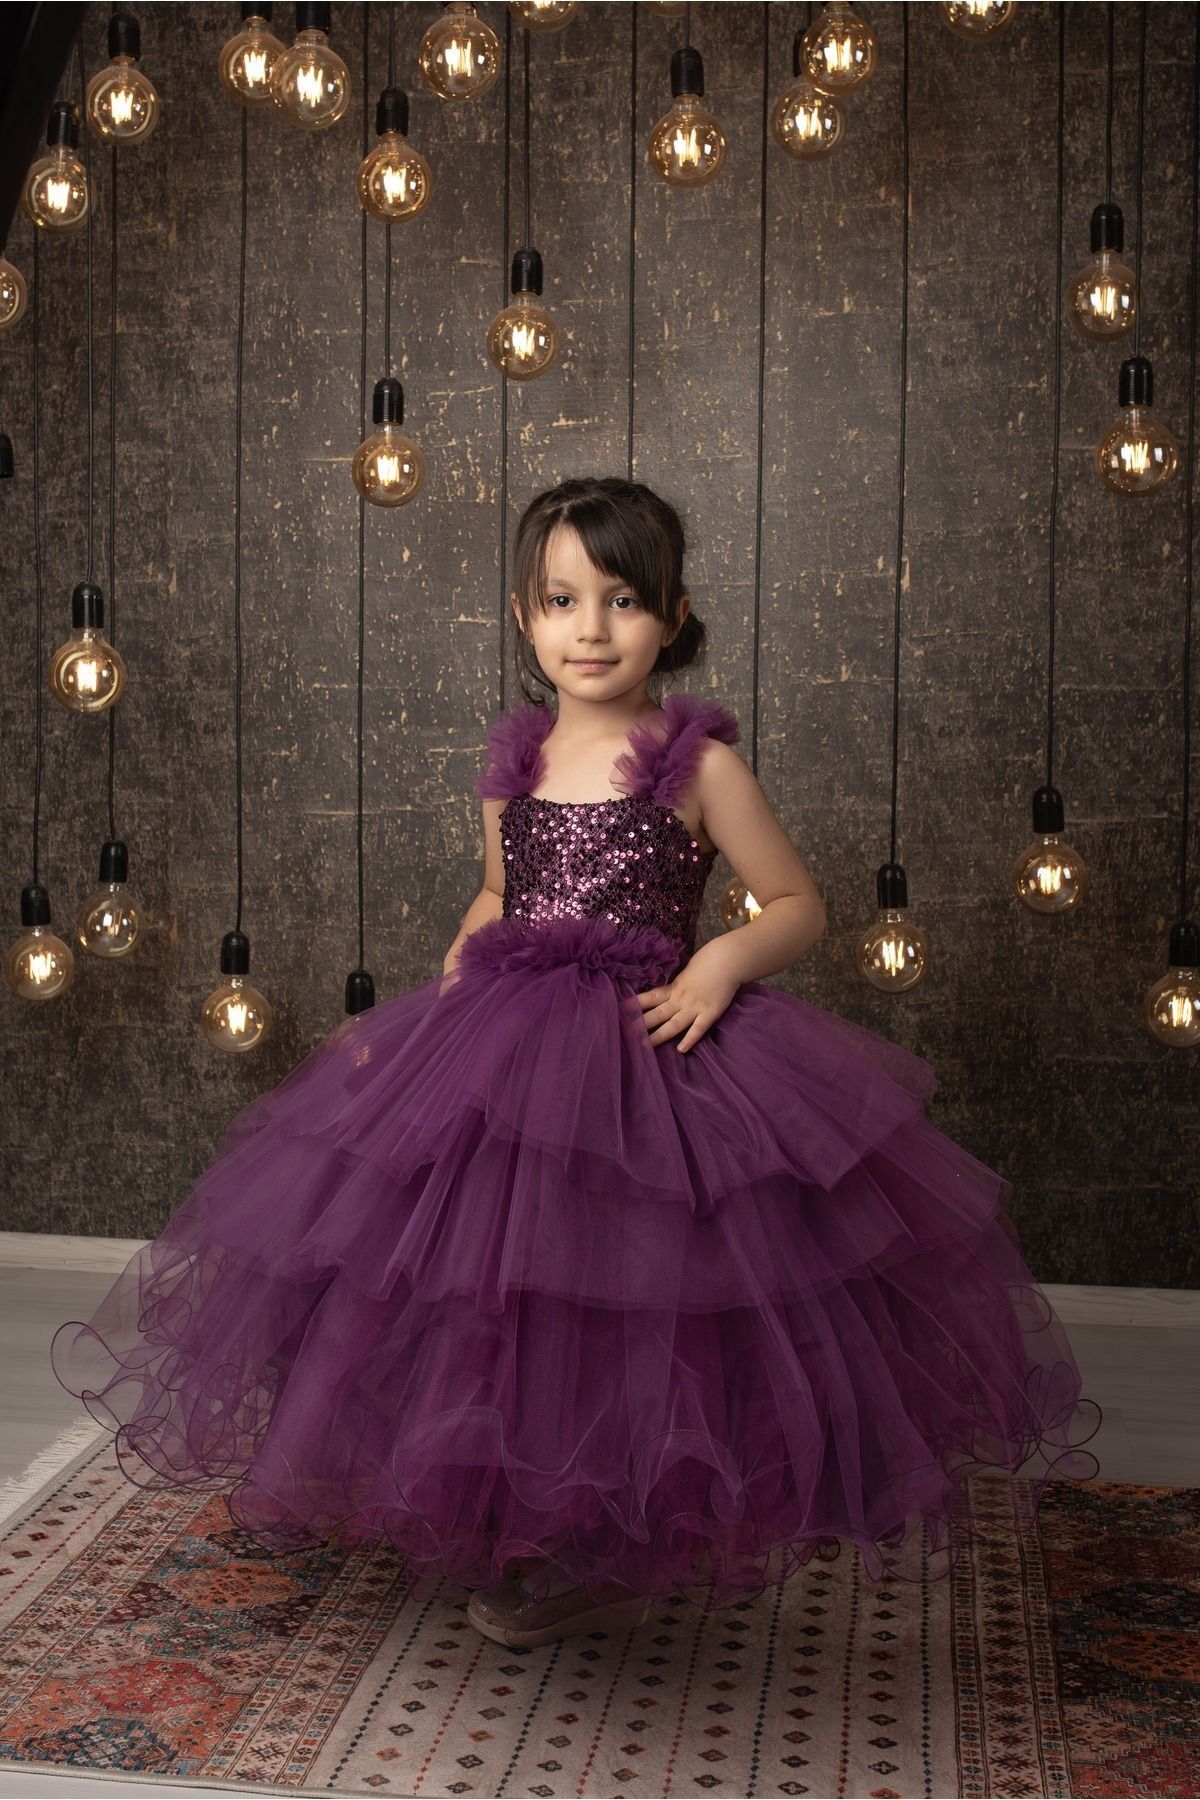 FR Shop F&r Shop Kız Çocuk Kabarık-tarlatanlı Mor Abiye Gelinlik Düğün Elbisesi Özel Seri Pul Işlemeli